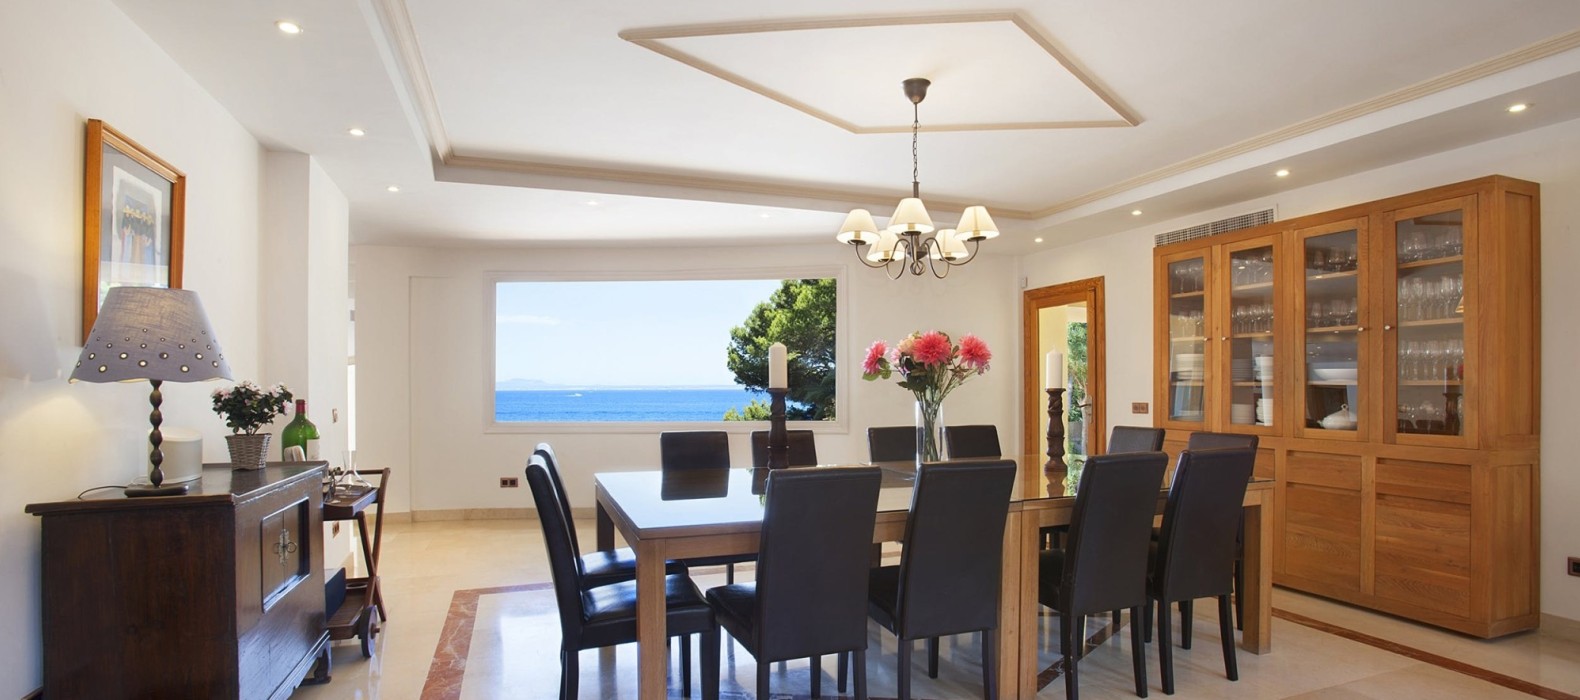 Dining room of Villa Eol in Mallorca